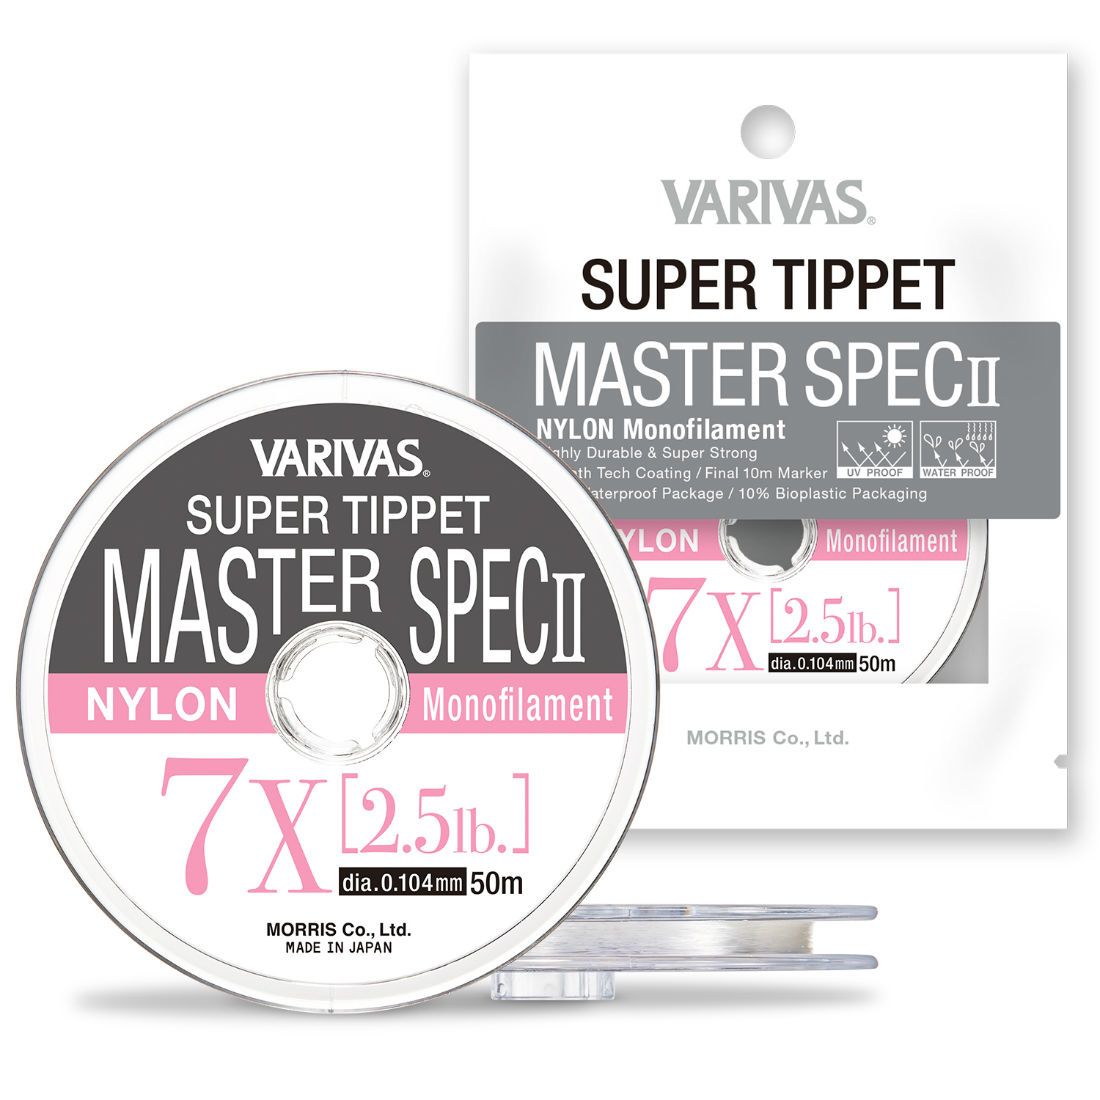 FIR SUPER TIPPET MASTER SPEC ll NYLON 4X 50m 0.165mm 5.1lb